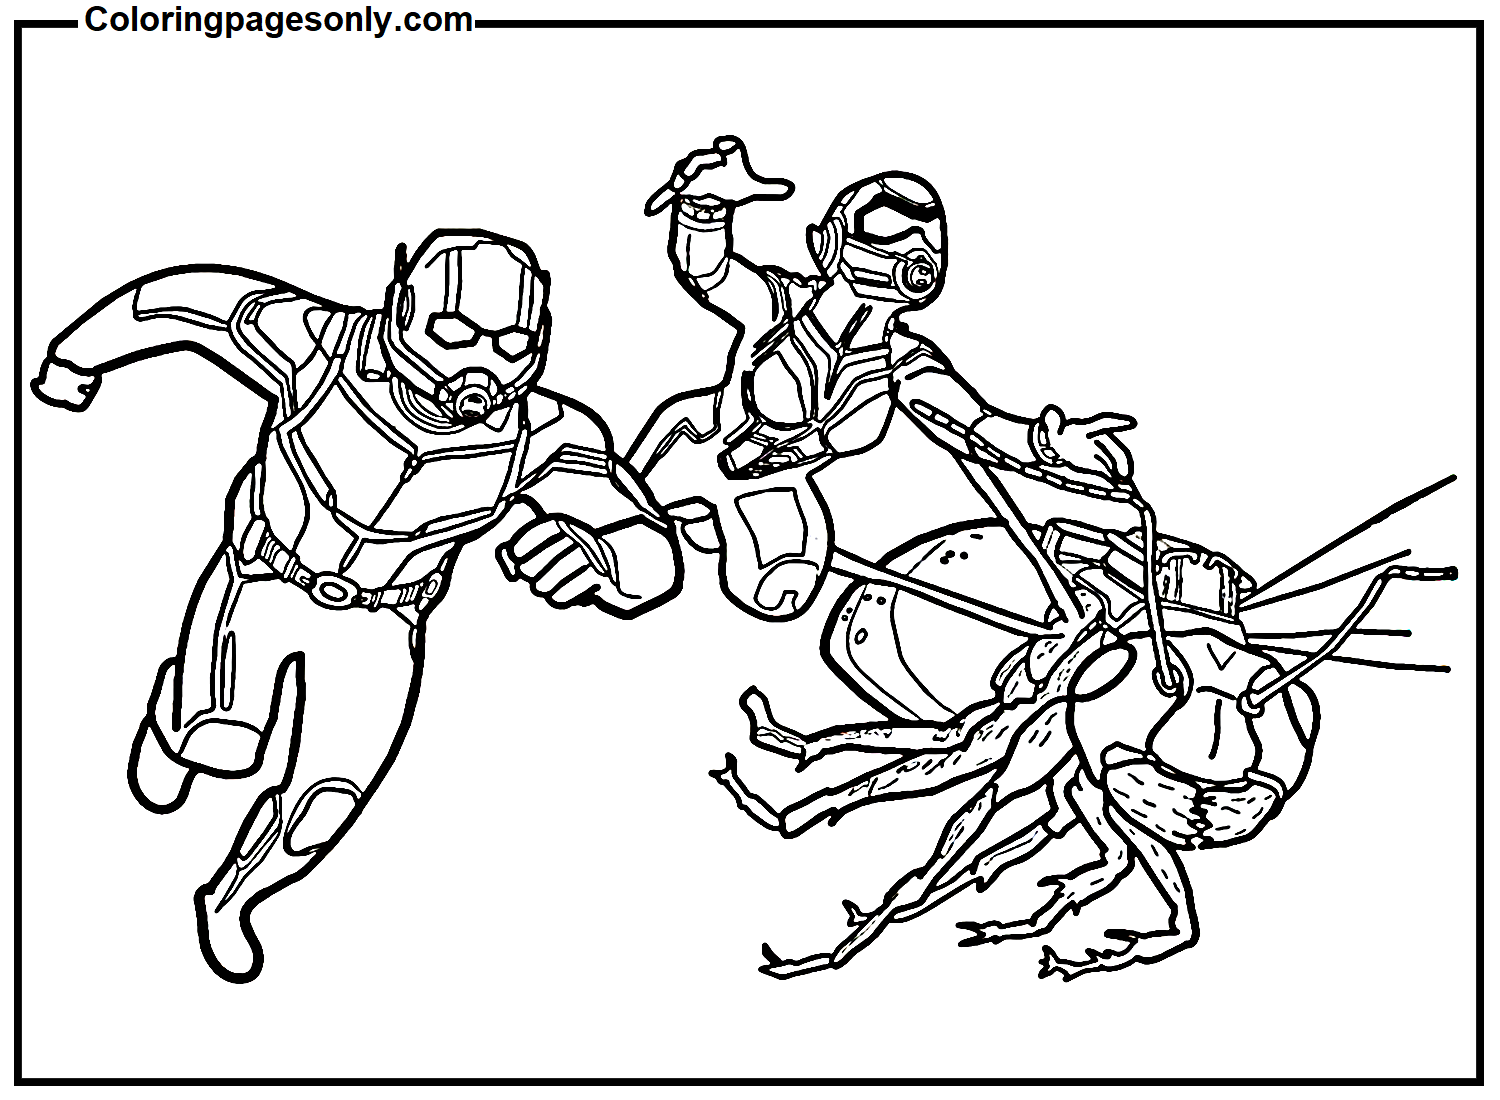 Ant-Man et les super-héros de la guêpe d'Ant-man